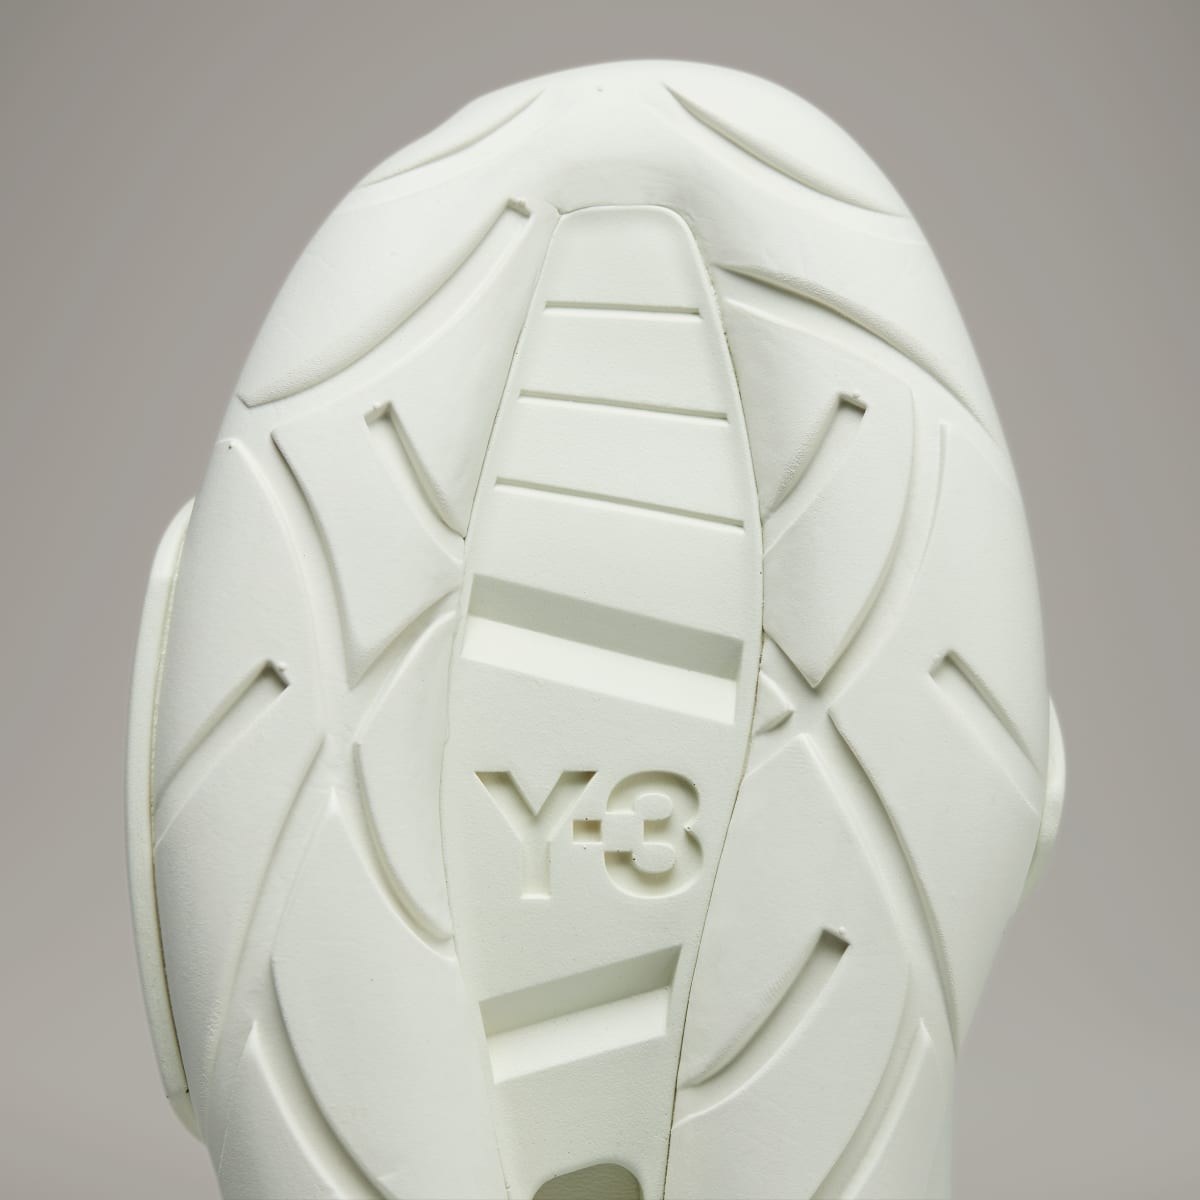 Adidas Y-3 Qasa. 10